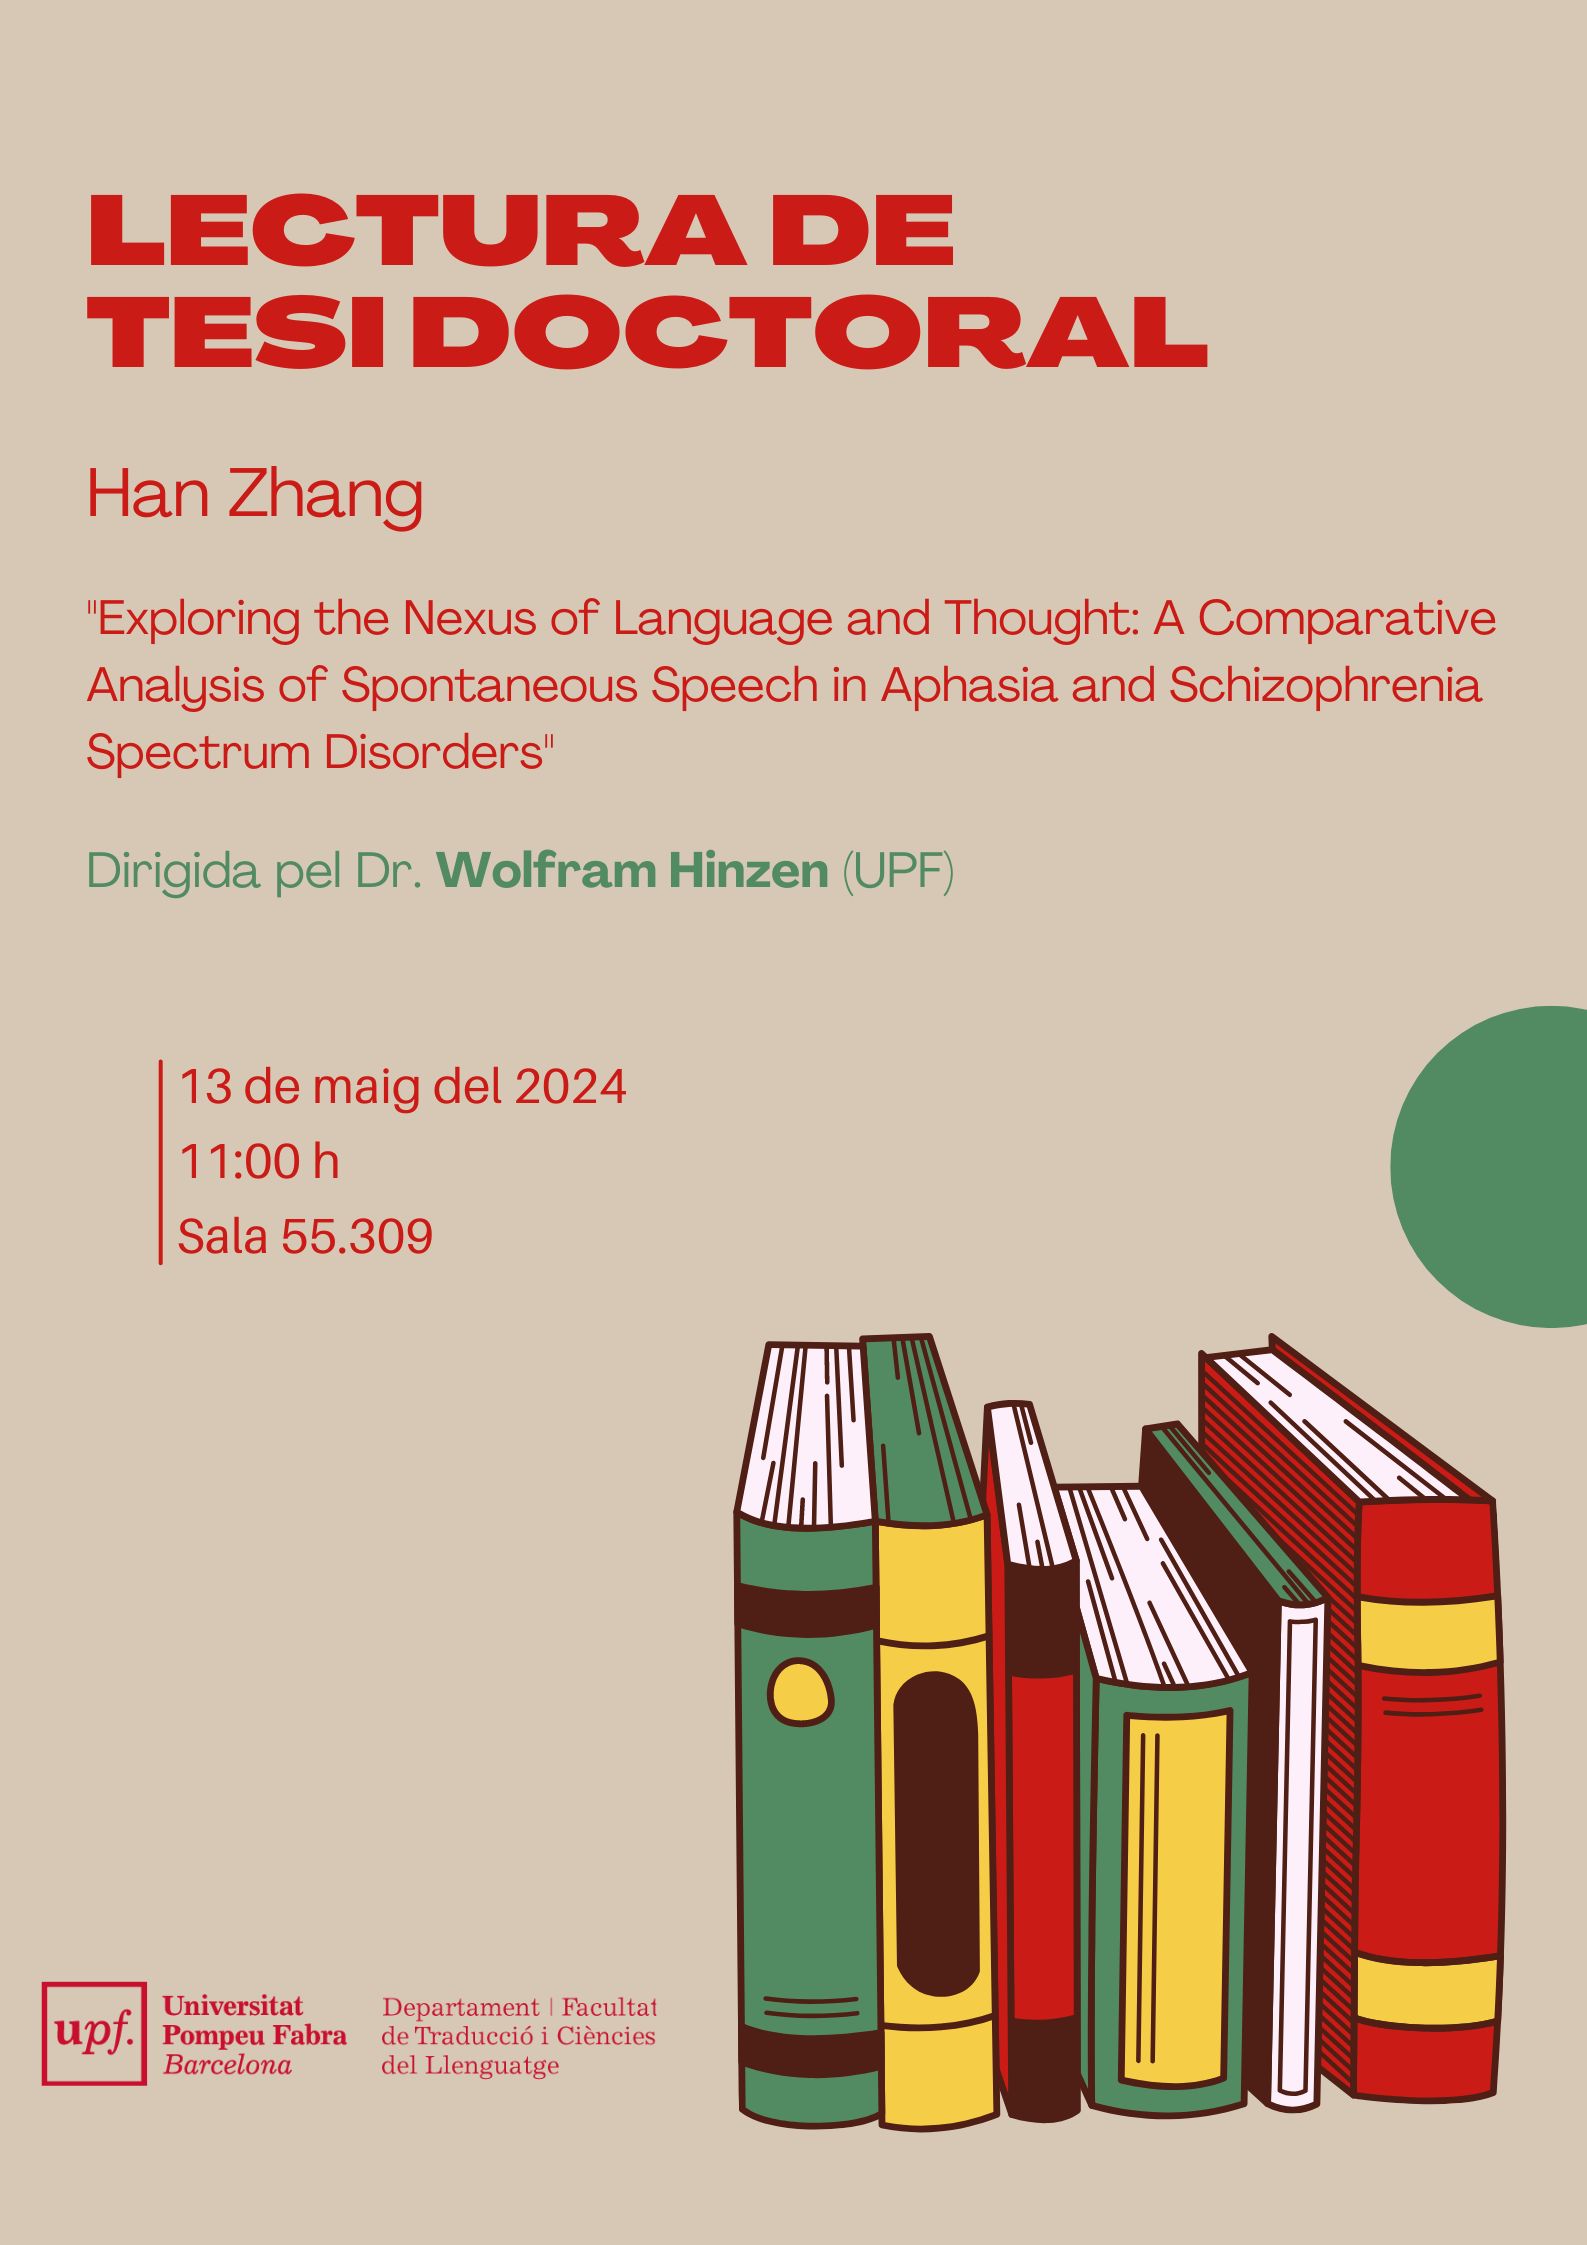 13/05/2024 Lectura de la tesi doctoral de Han Zhang, a les 11.00 hores